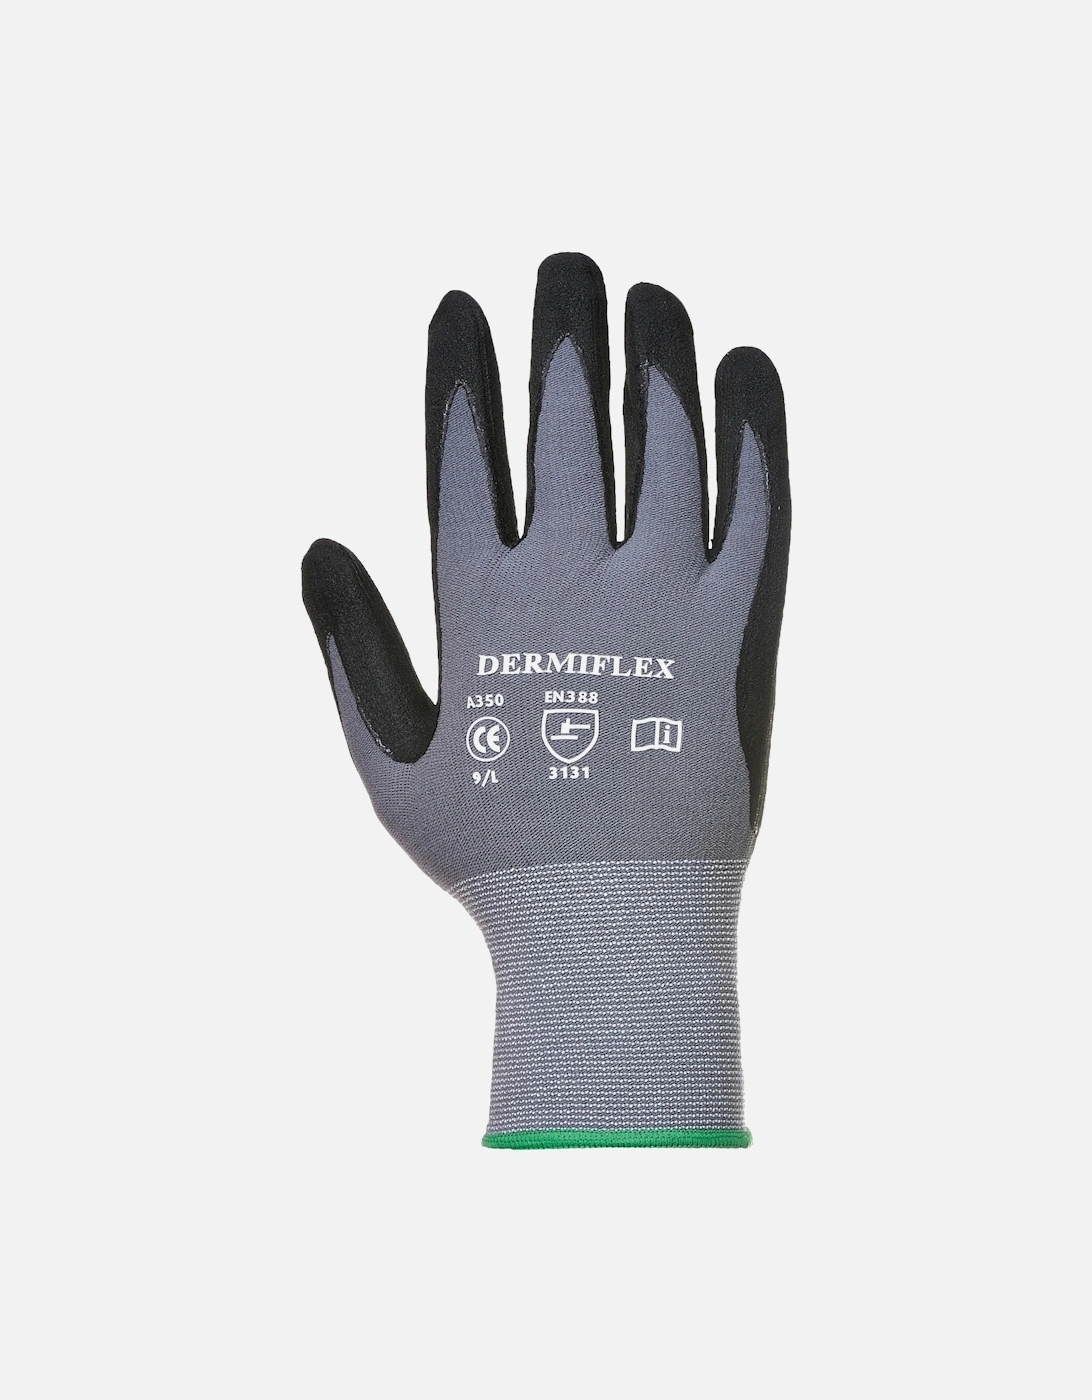 Dermiflex Safety Work Gloves (Pack of 2), 2 of 1